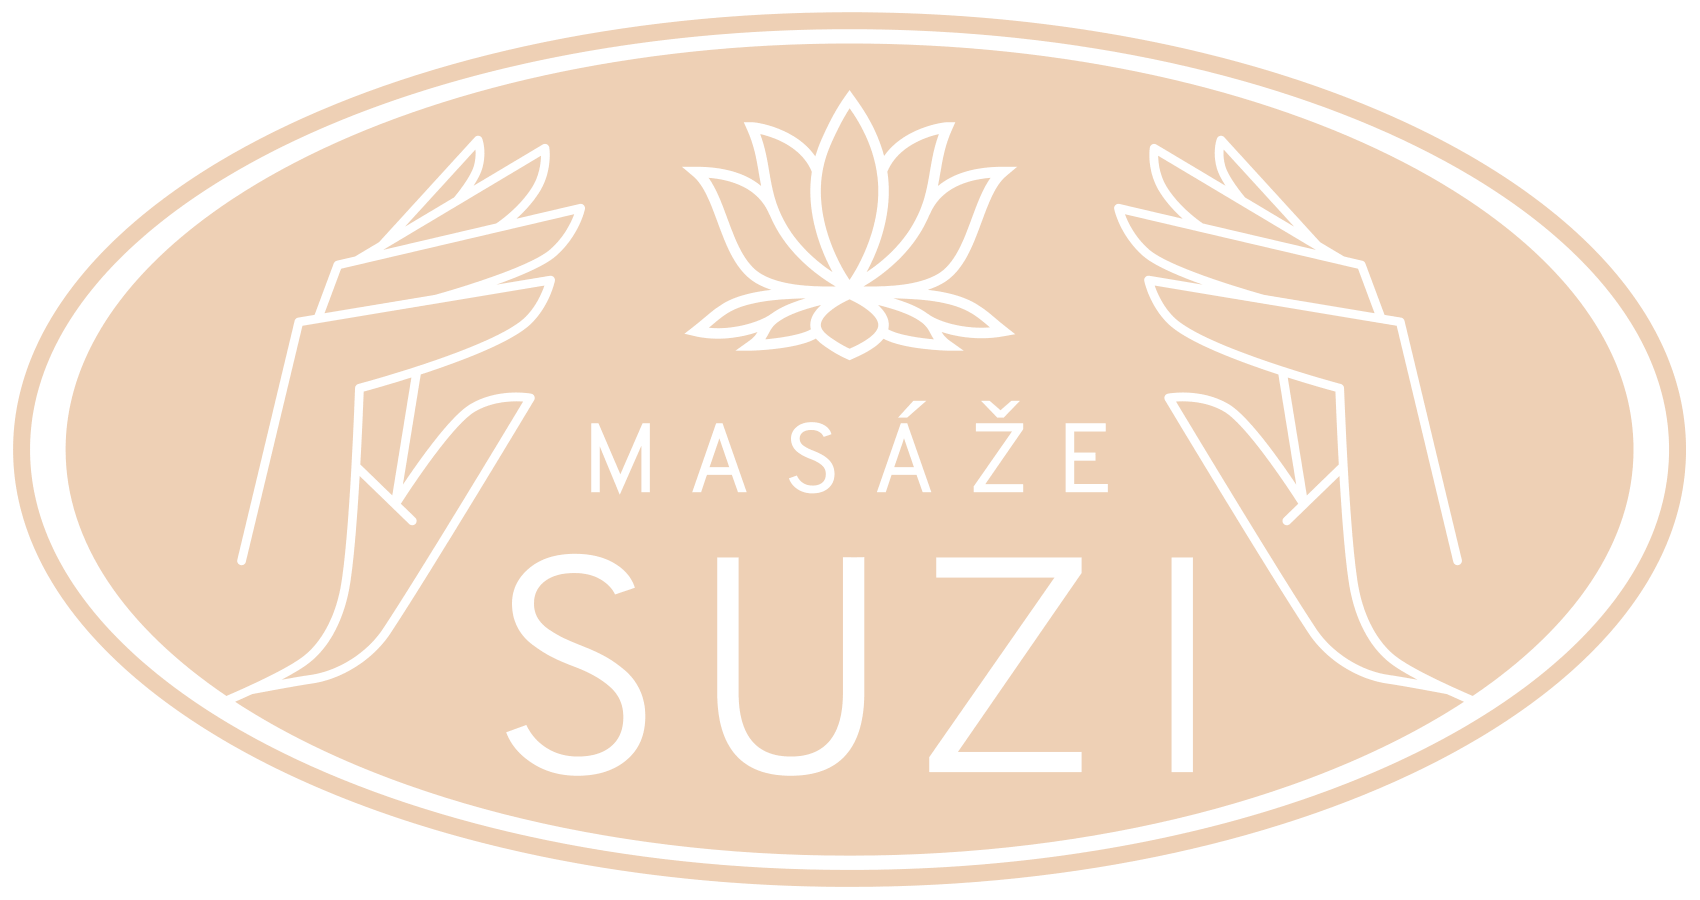 Masáže Suzi - profesionálne masáže certifikovanou masérkou